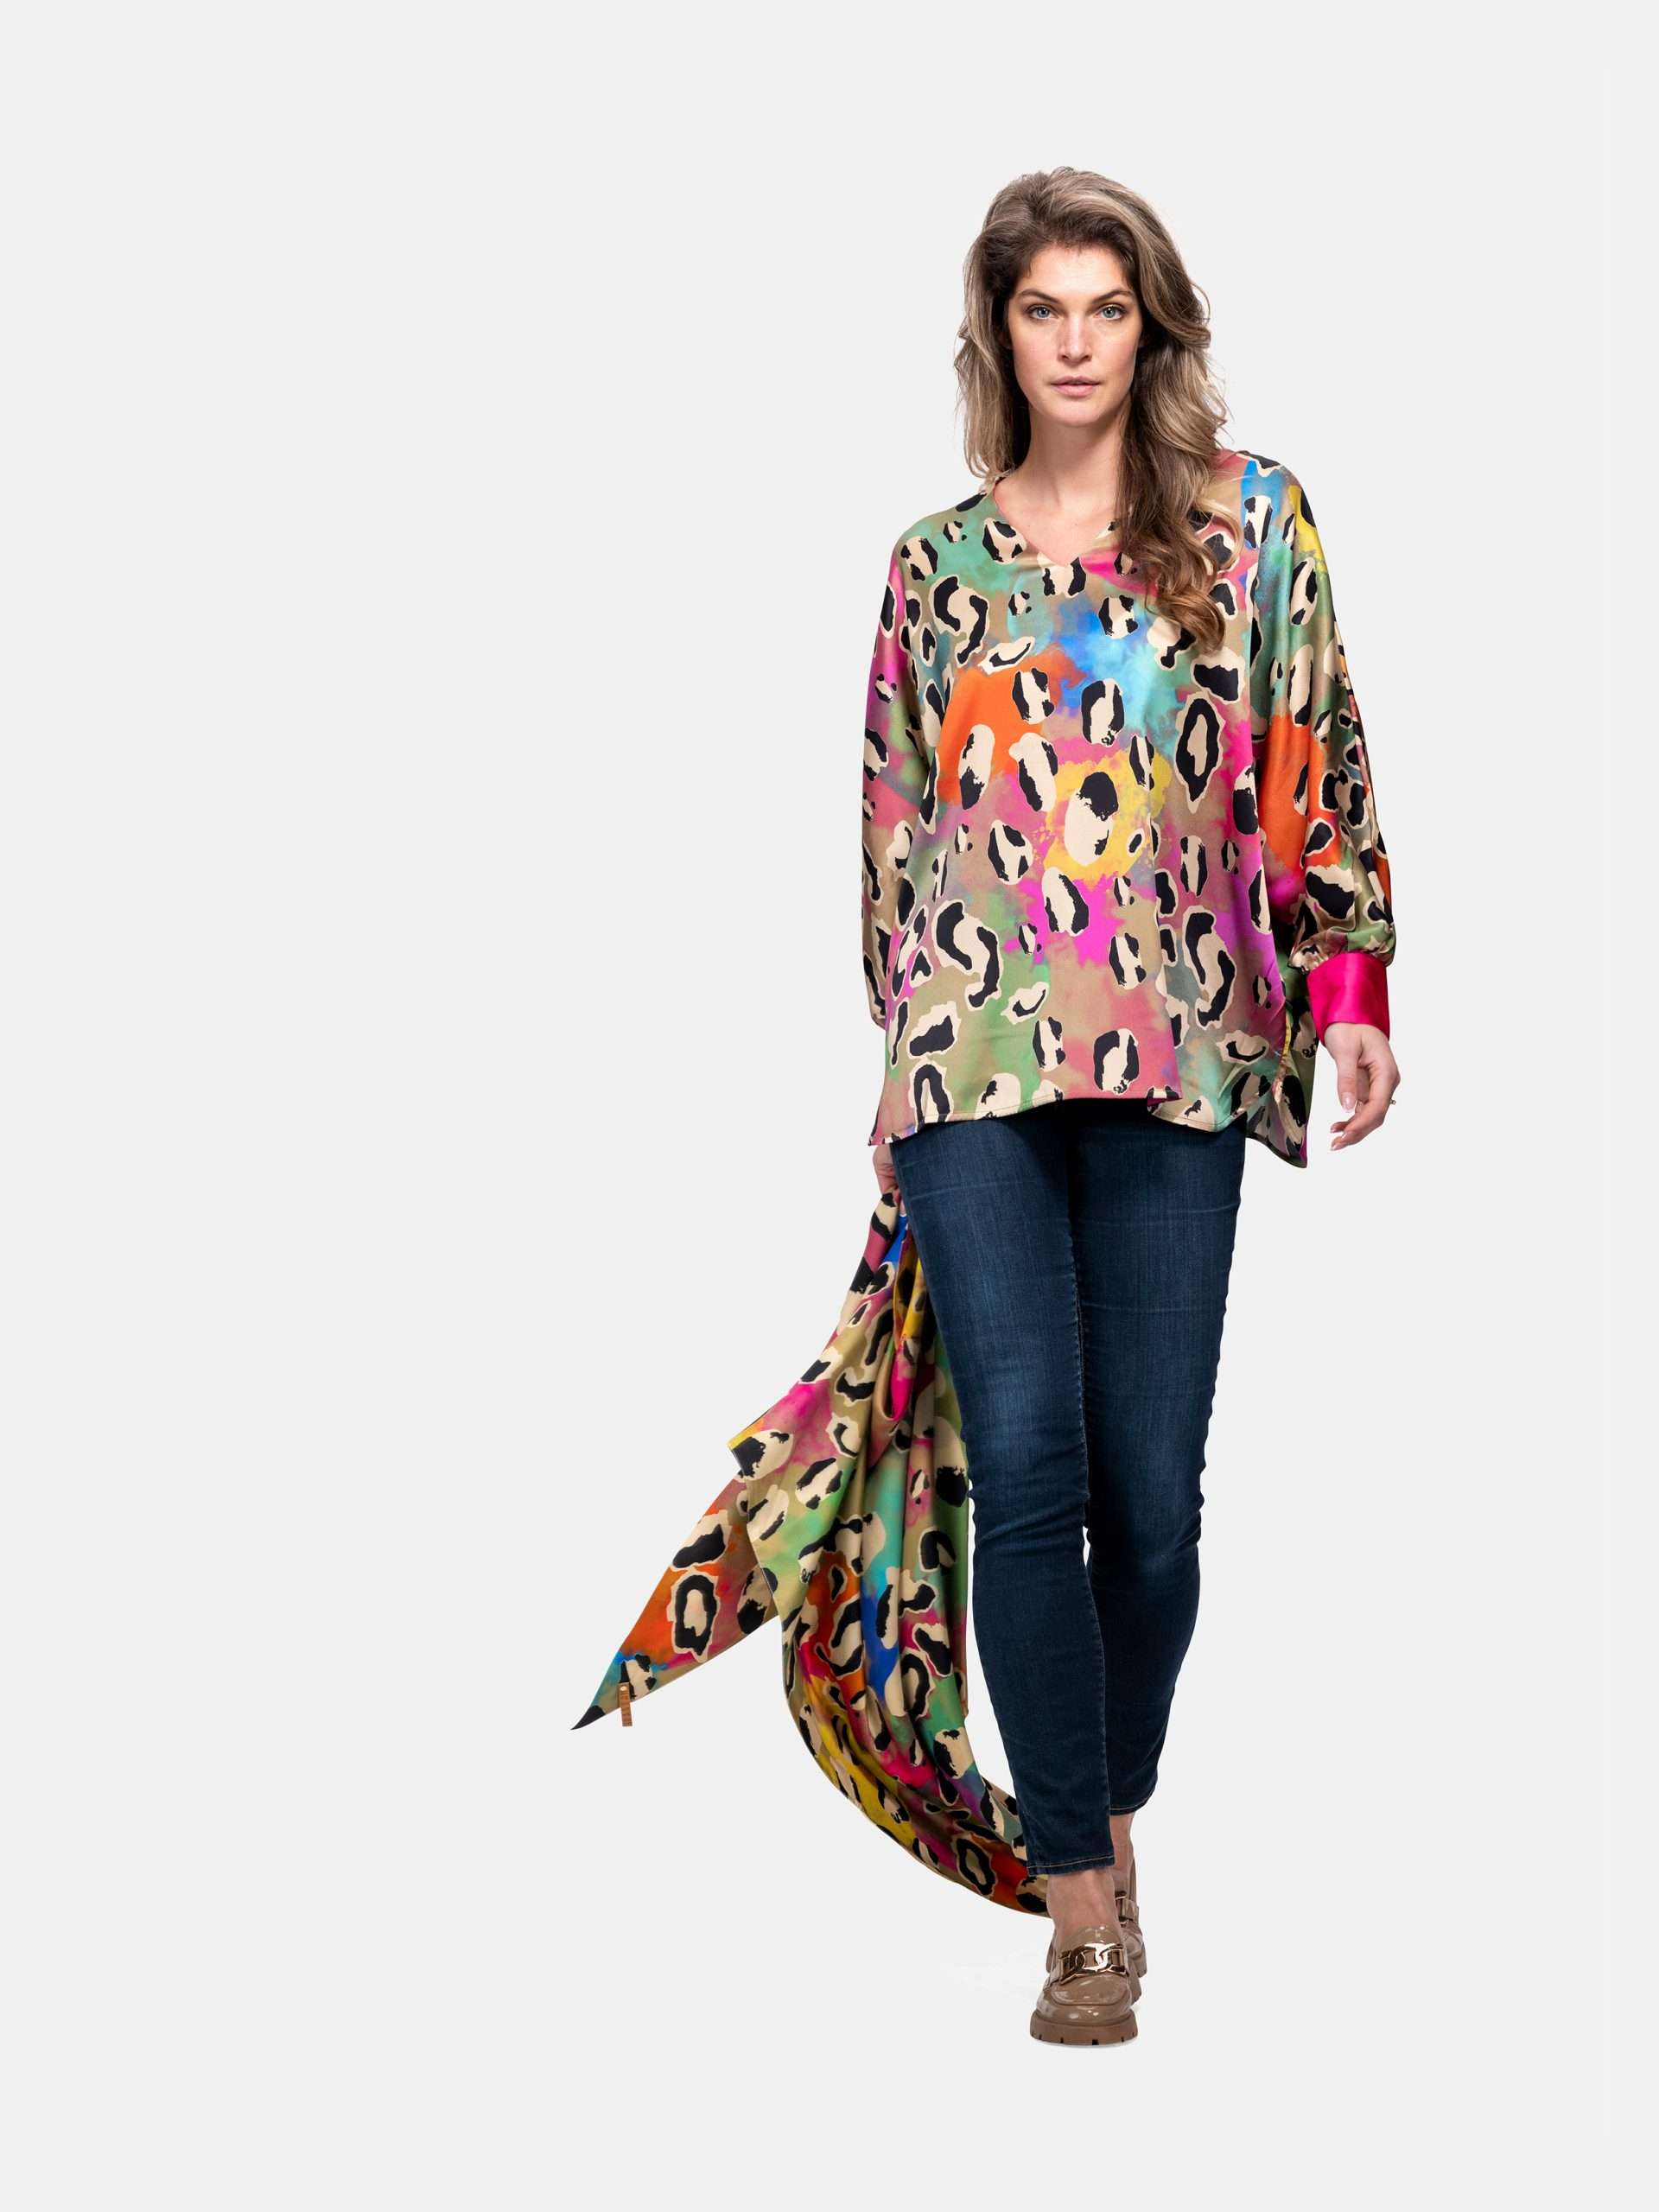 Afbeelding van Mucho Gusto Zijden blouse beverly hills kleurrijke luipaardprint